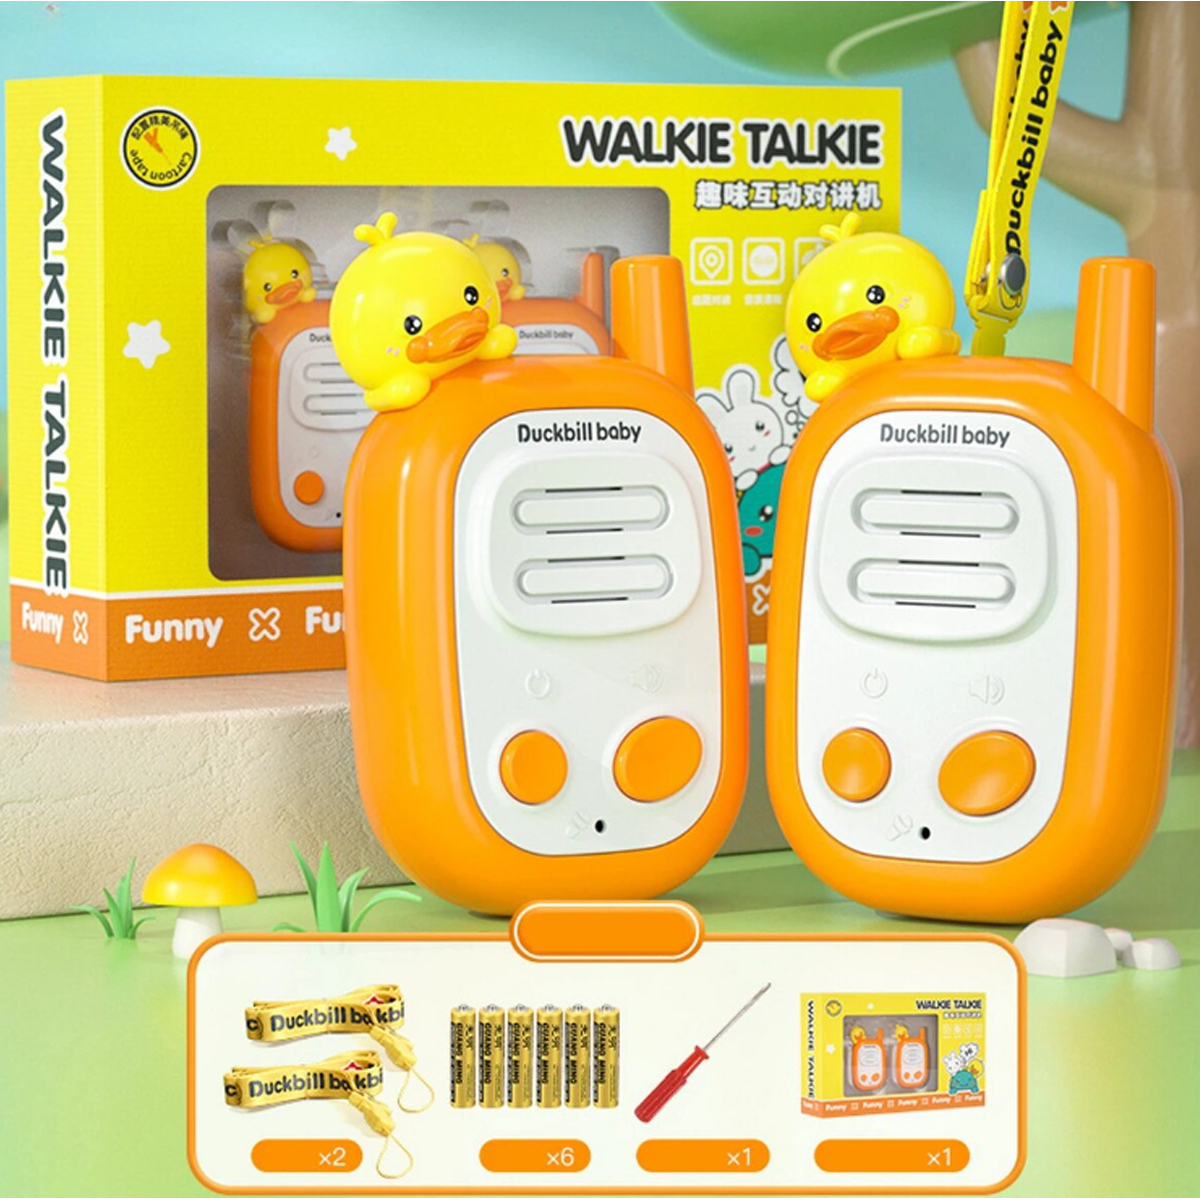 Walkie-talkie Juguete para Niños con Distancia de 3 Km